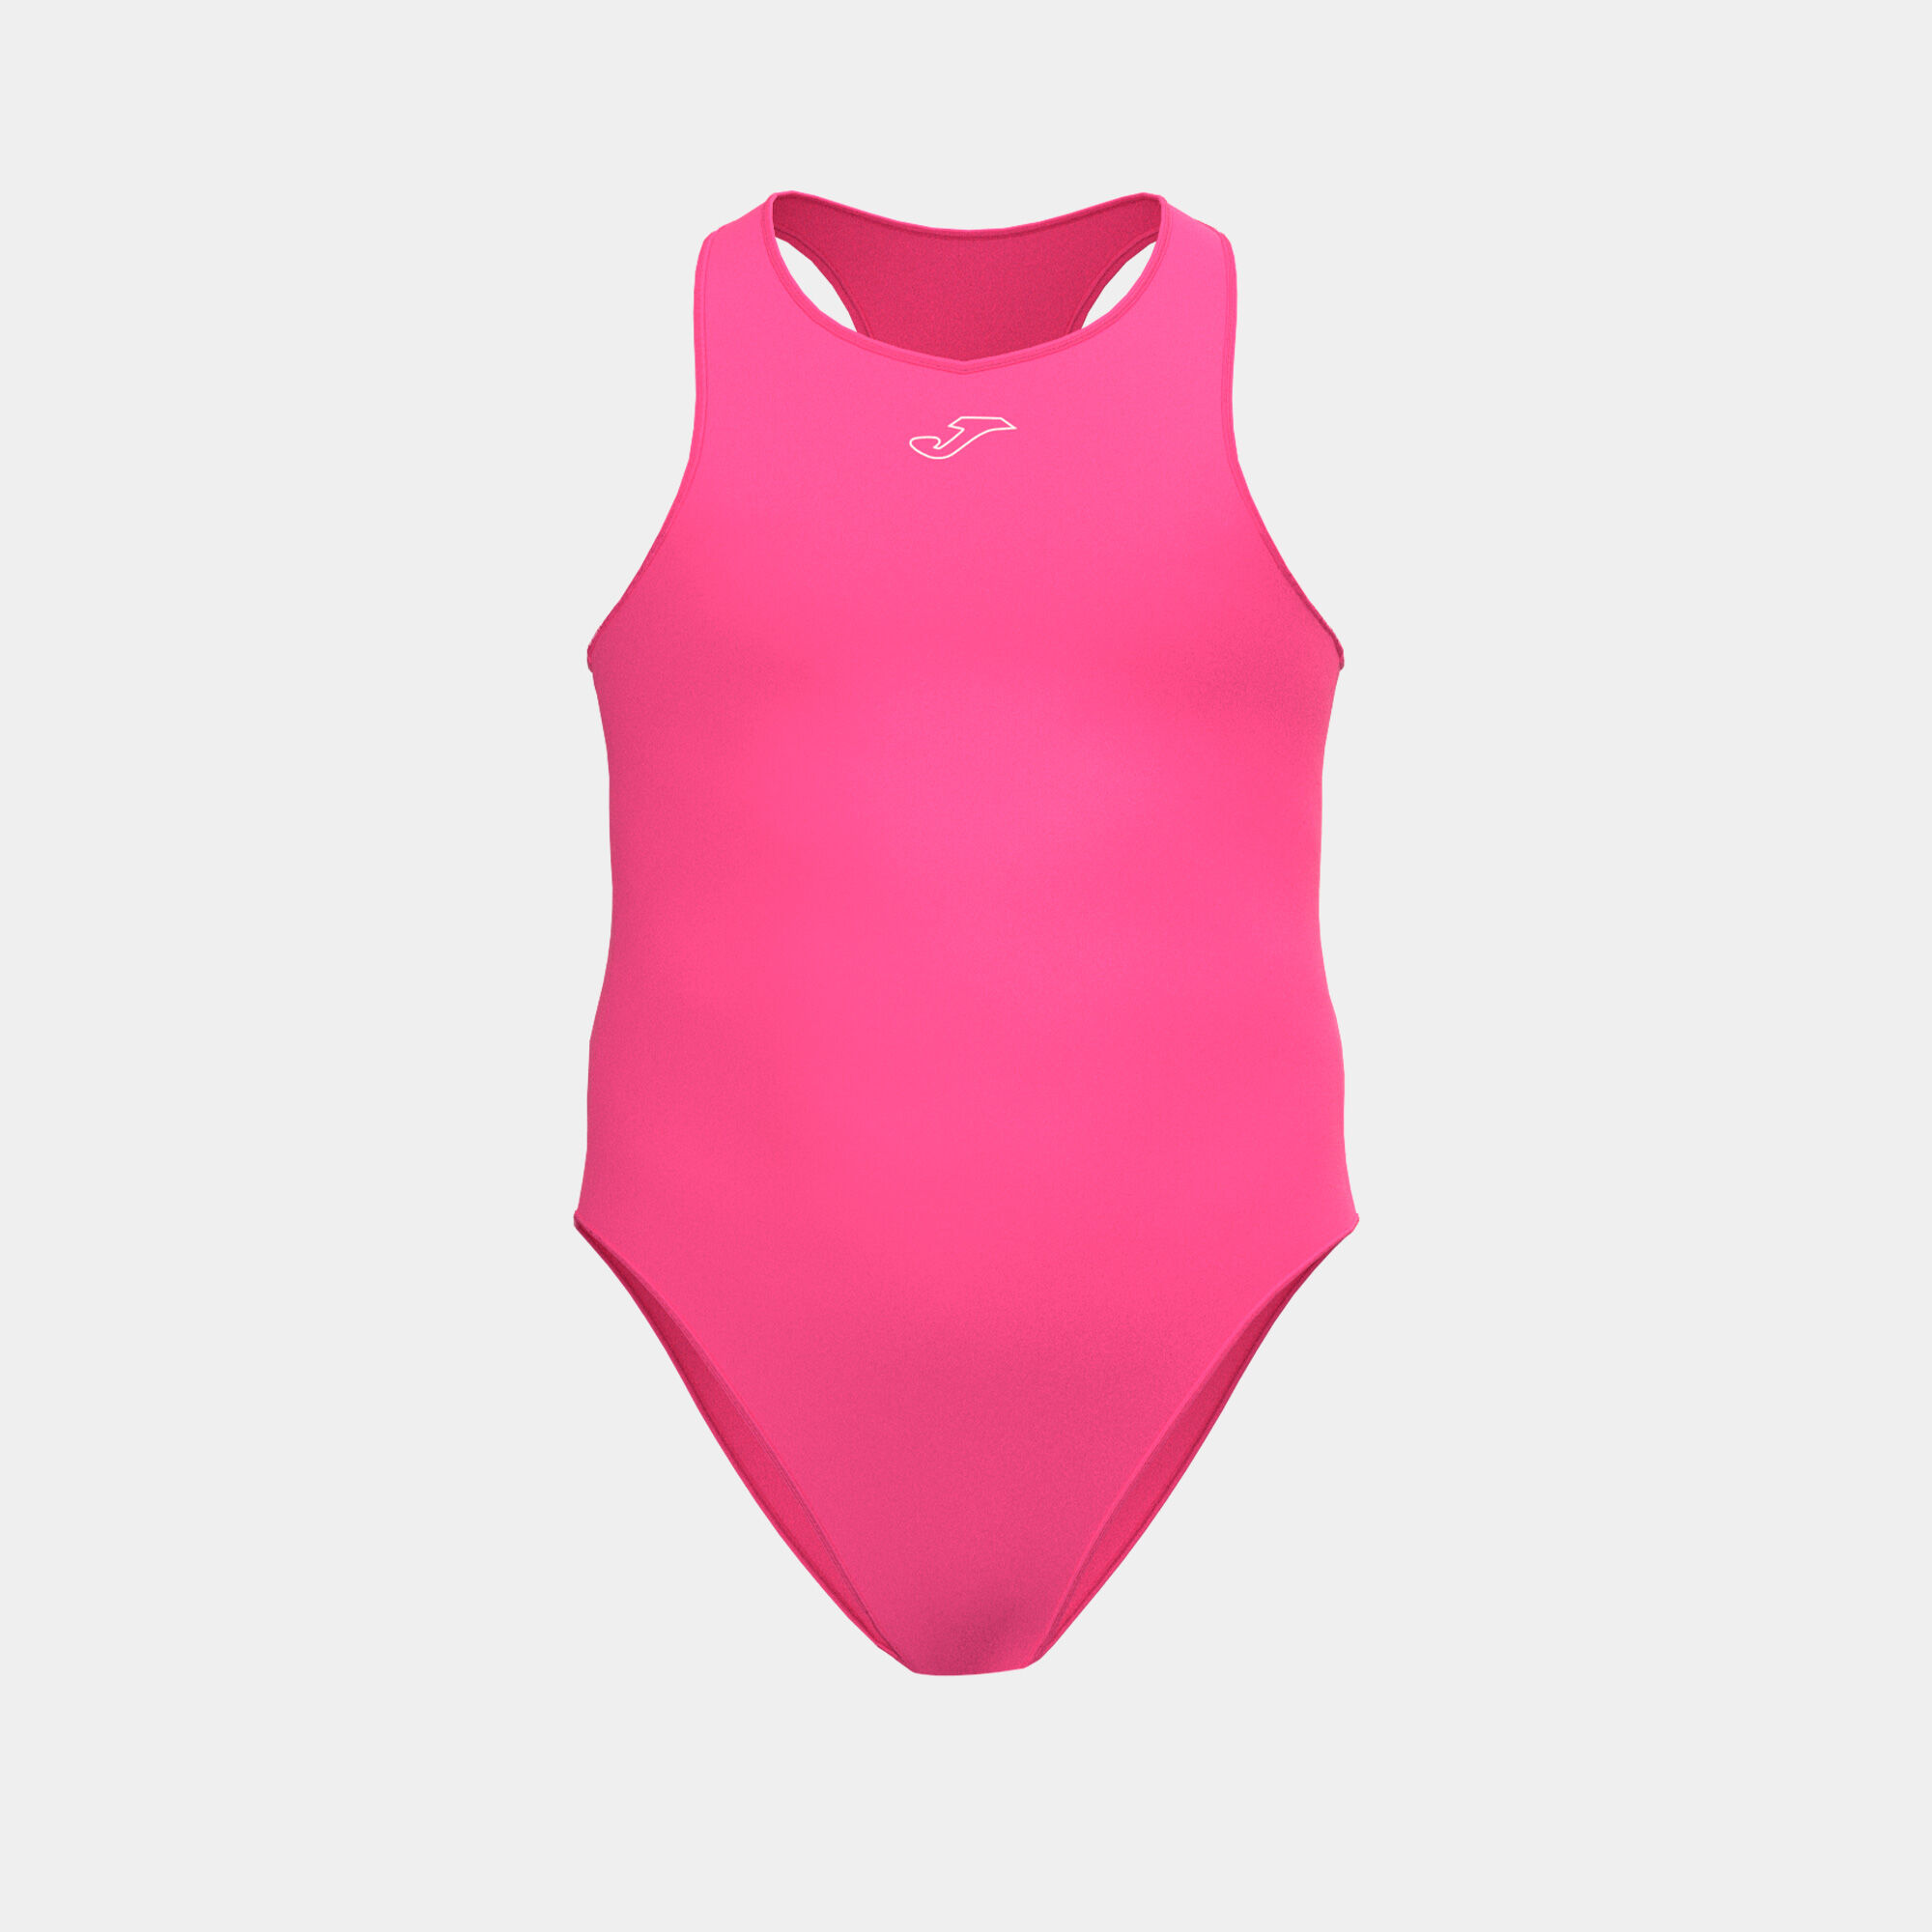 Fato de banho rapariga Splash rosa fluorescente